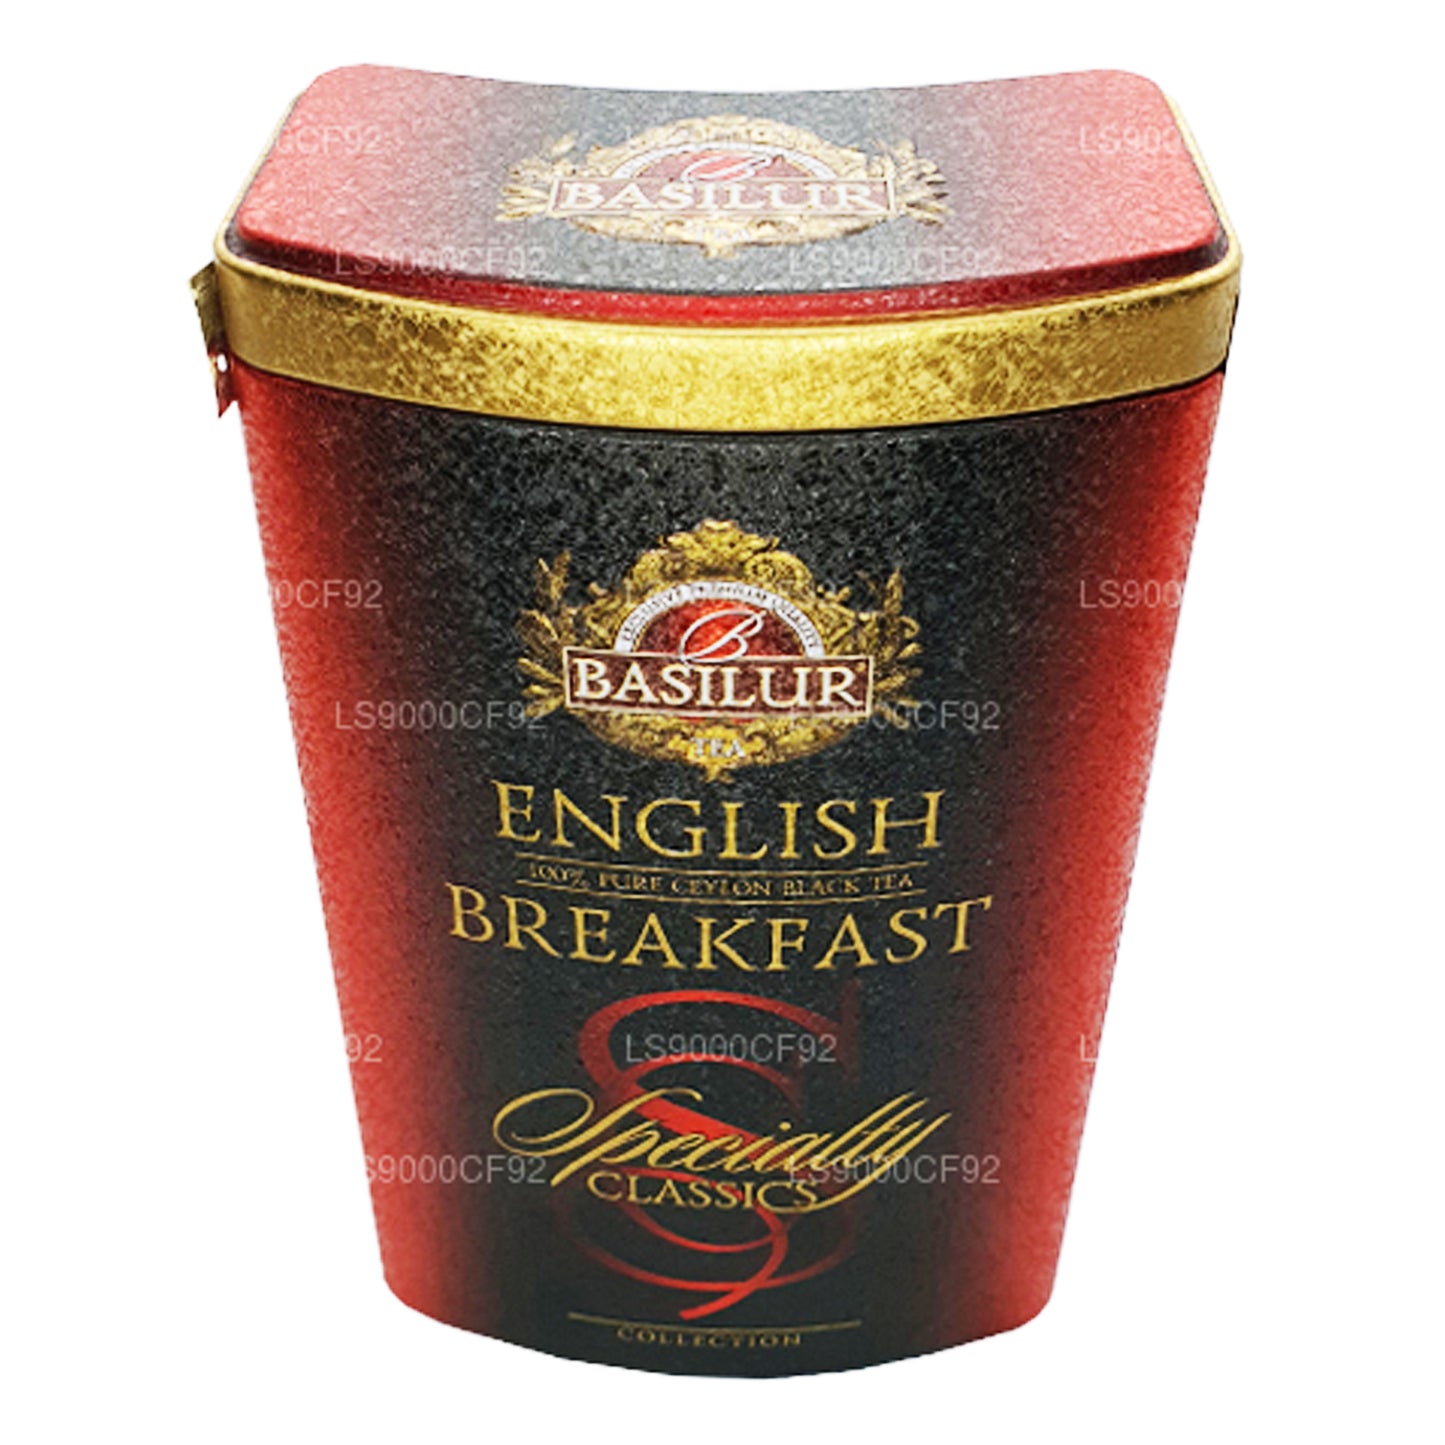 Basilur Specialty Classics English Breakfast caddy (100g)